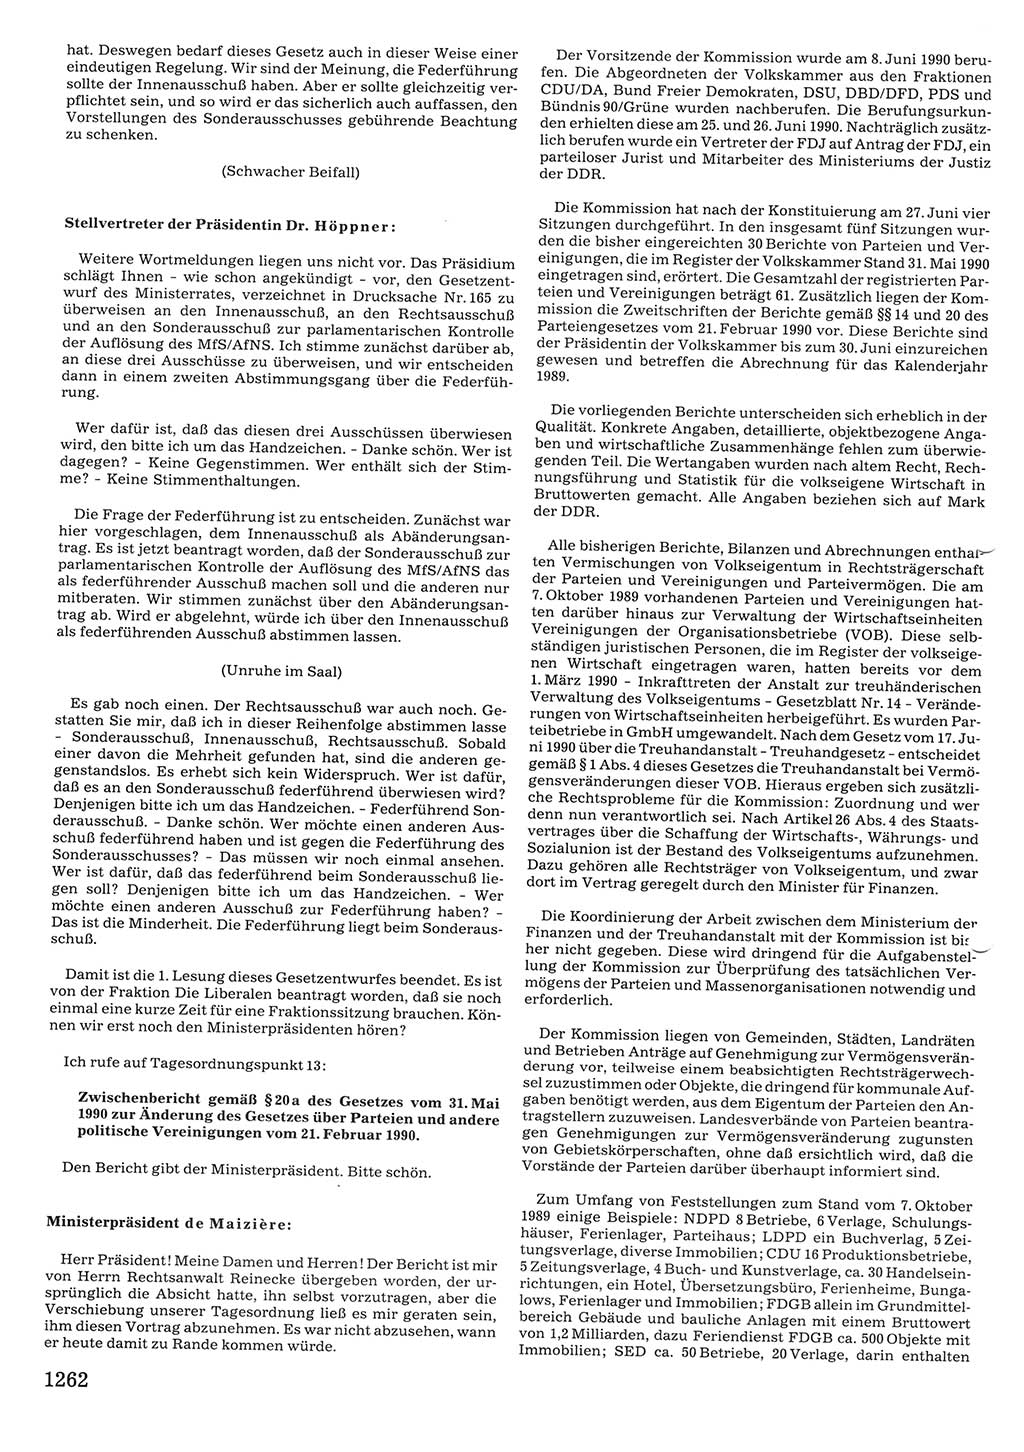 Tagungen der Volkskammer (VK) der Deutschen Demokratischen Republik (DDR), 10. Wahlperiode 1990, Seite 1262 (VK. DDR 10. WP. 1990, Prot. Tg. 1-38, 5.4.-2.10.1990, S. 1262)